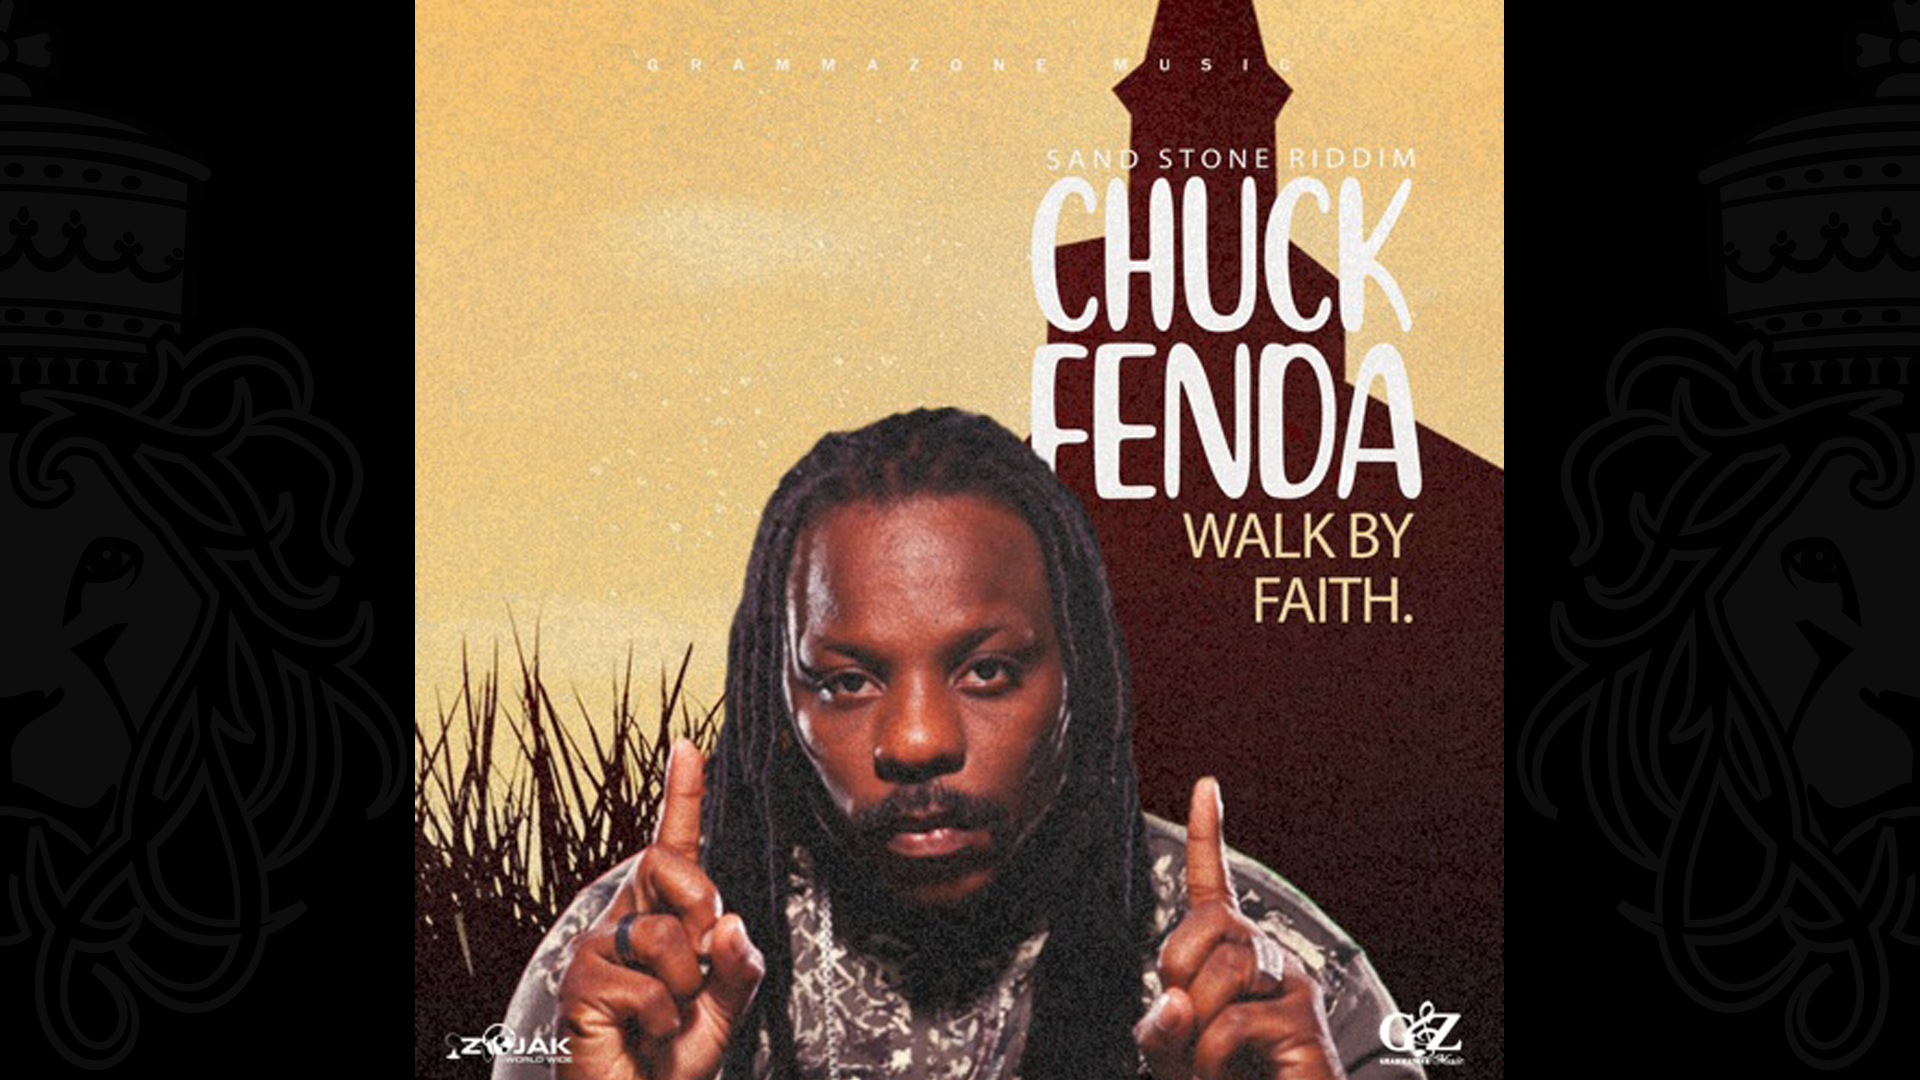 Chuck Fenda - Walk by Faith